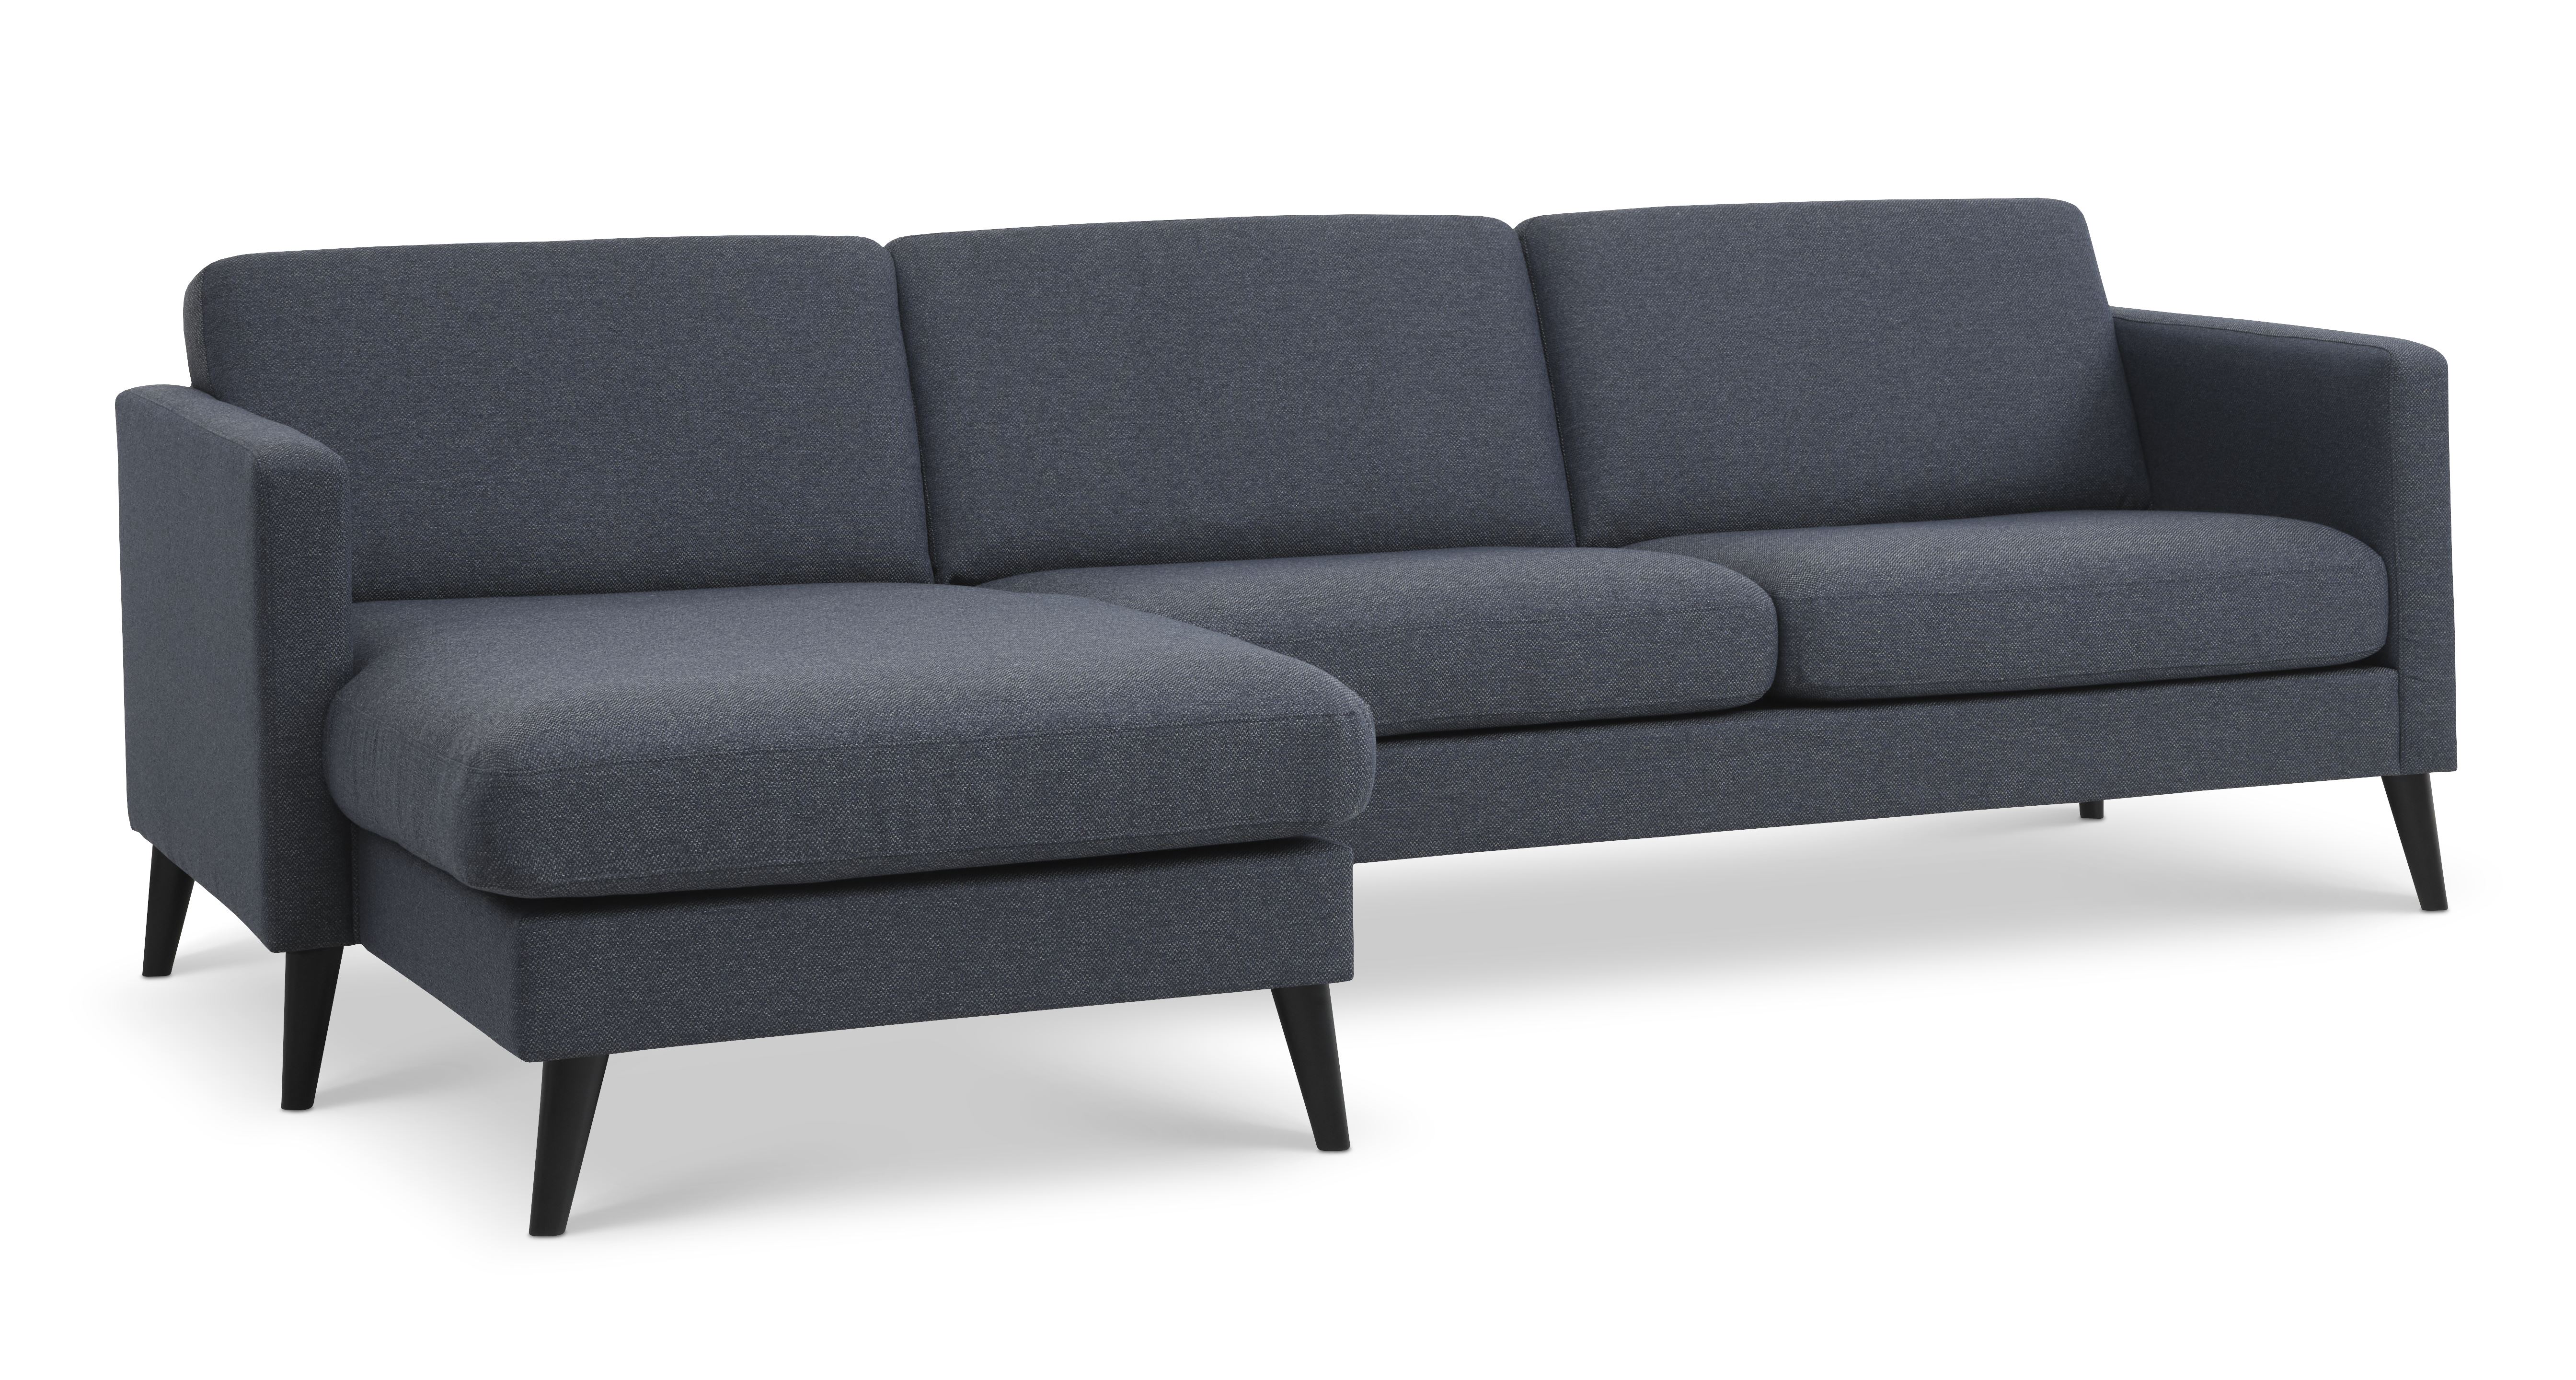 Ask sæt 51 3D sofa, m. chaiselong - navy blå polyester stof og sort træ